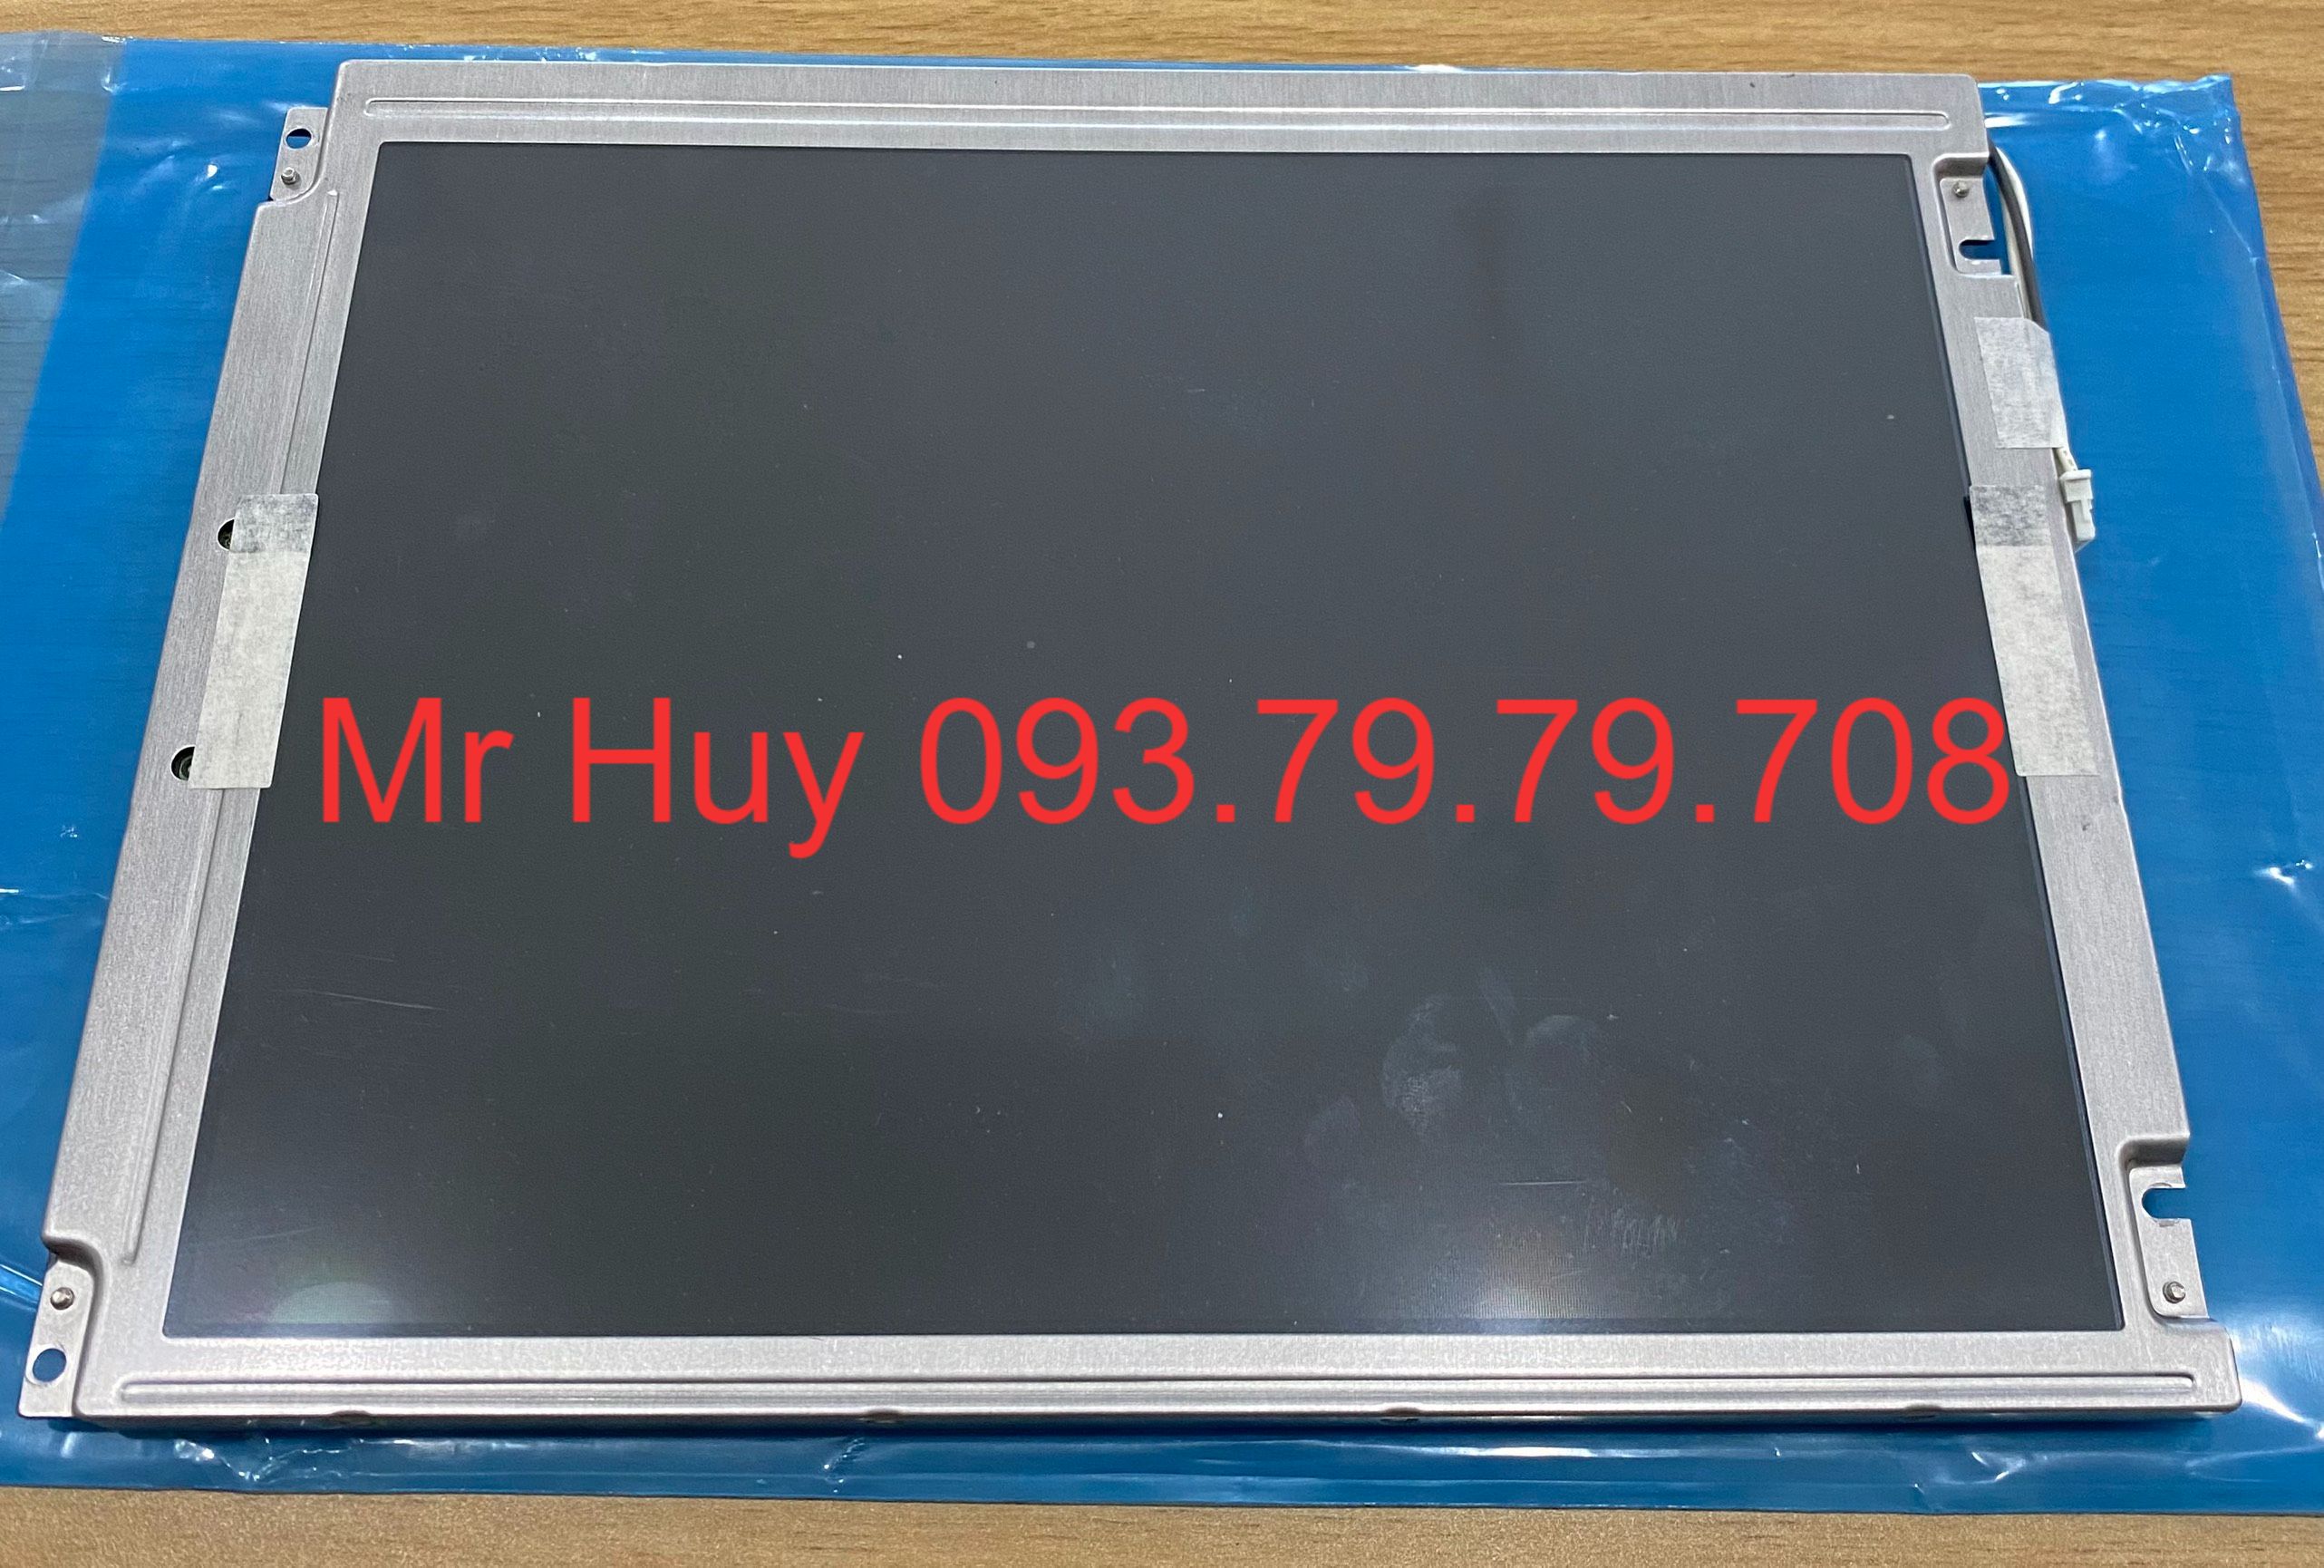 1 Màn hình LCD NEC NL6448BC33-54 NEC Vietnam Nhất Huy Automation